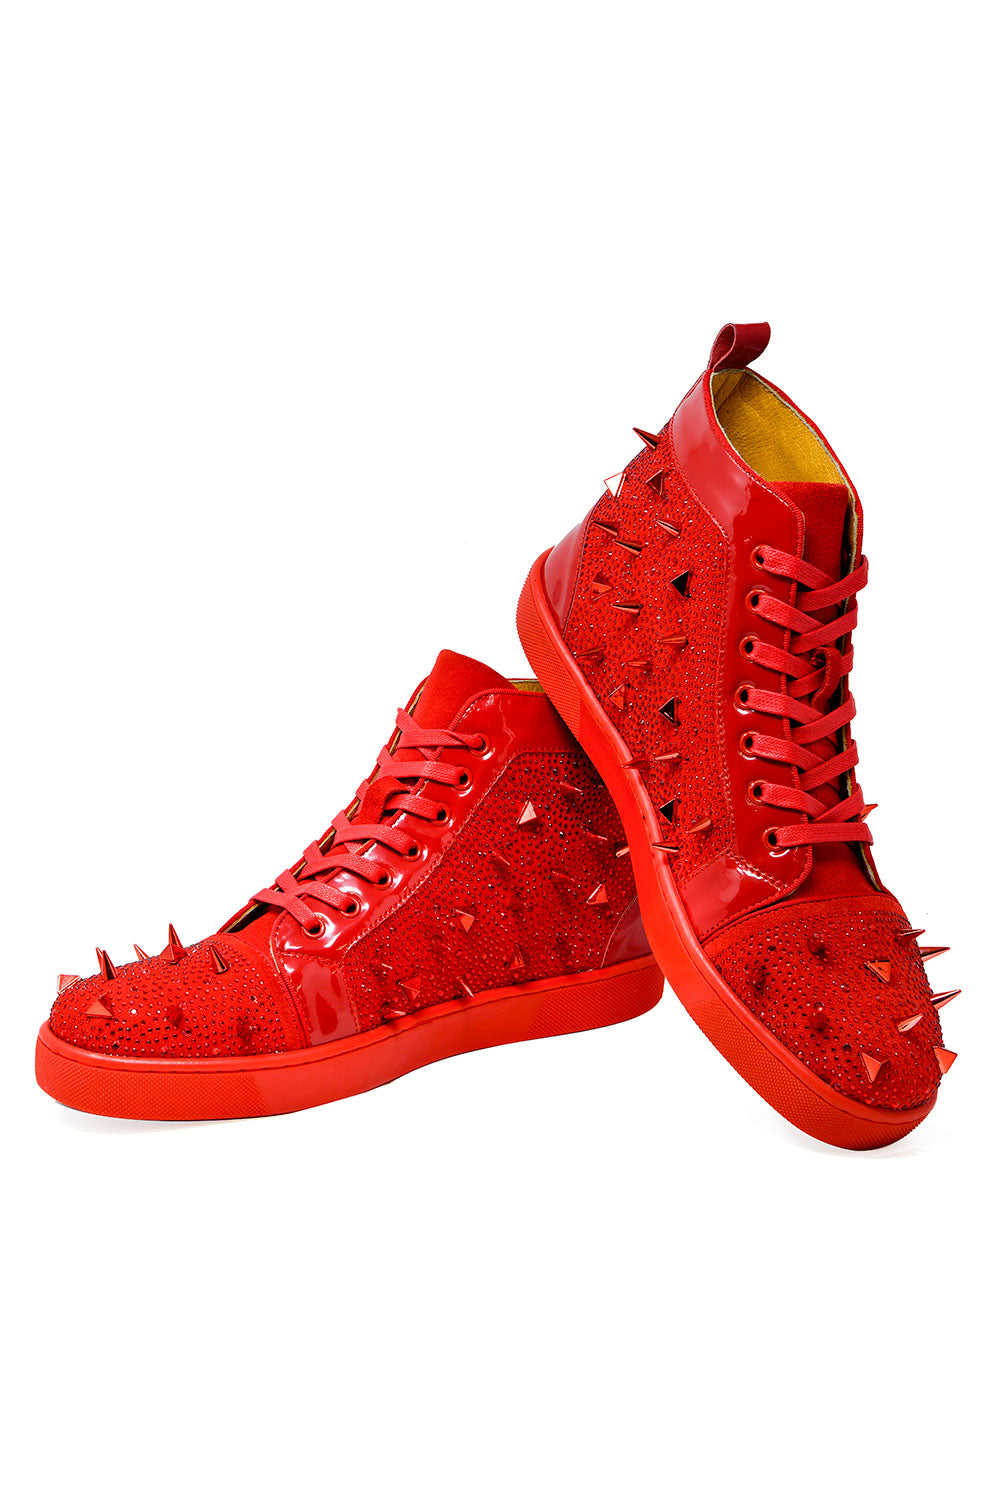 Barabas men's rhinestone spike black high-top sneakers SH715 Red